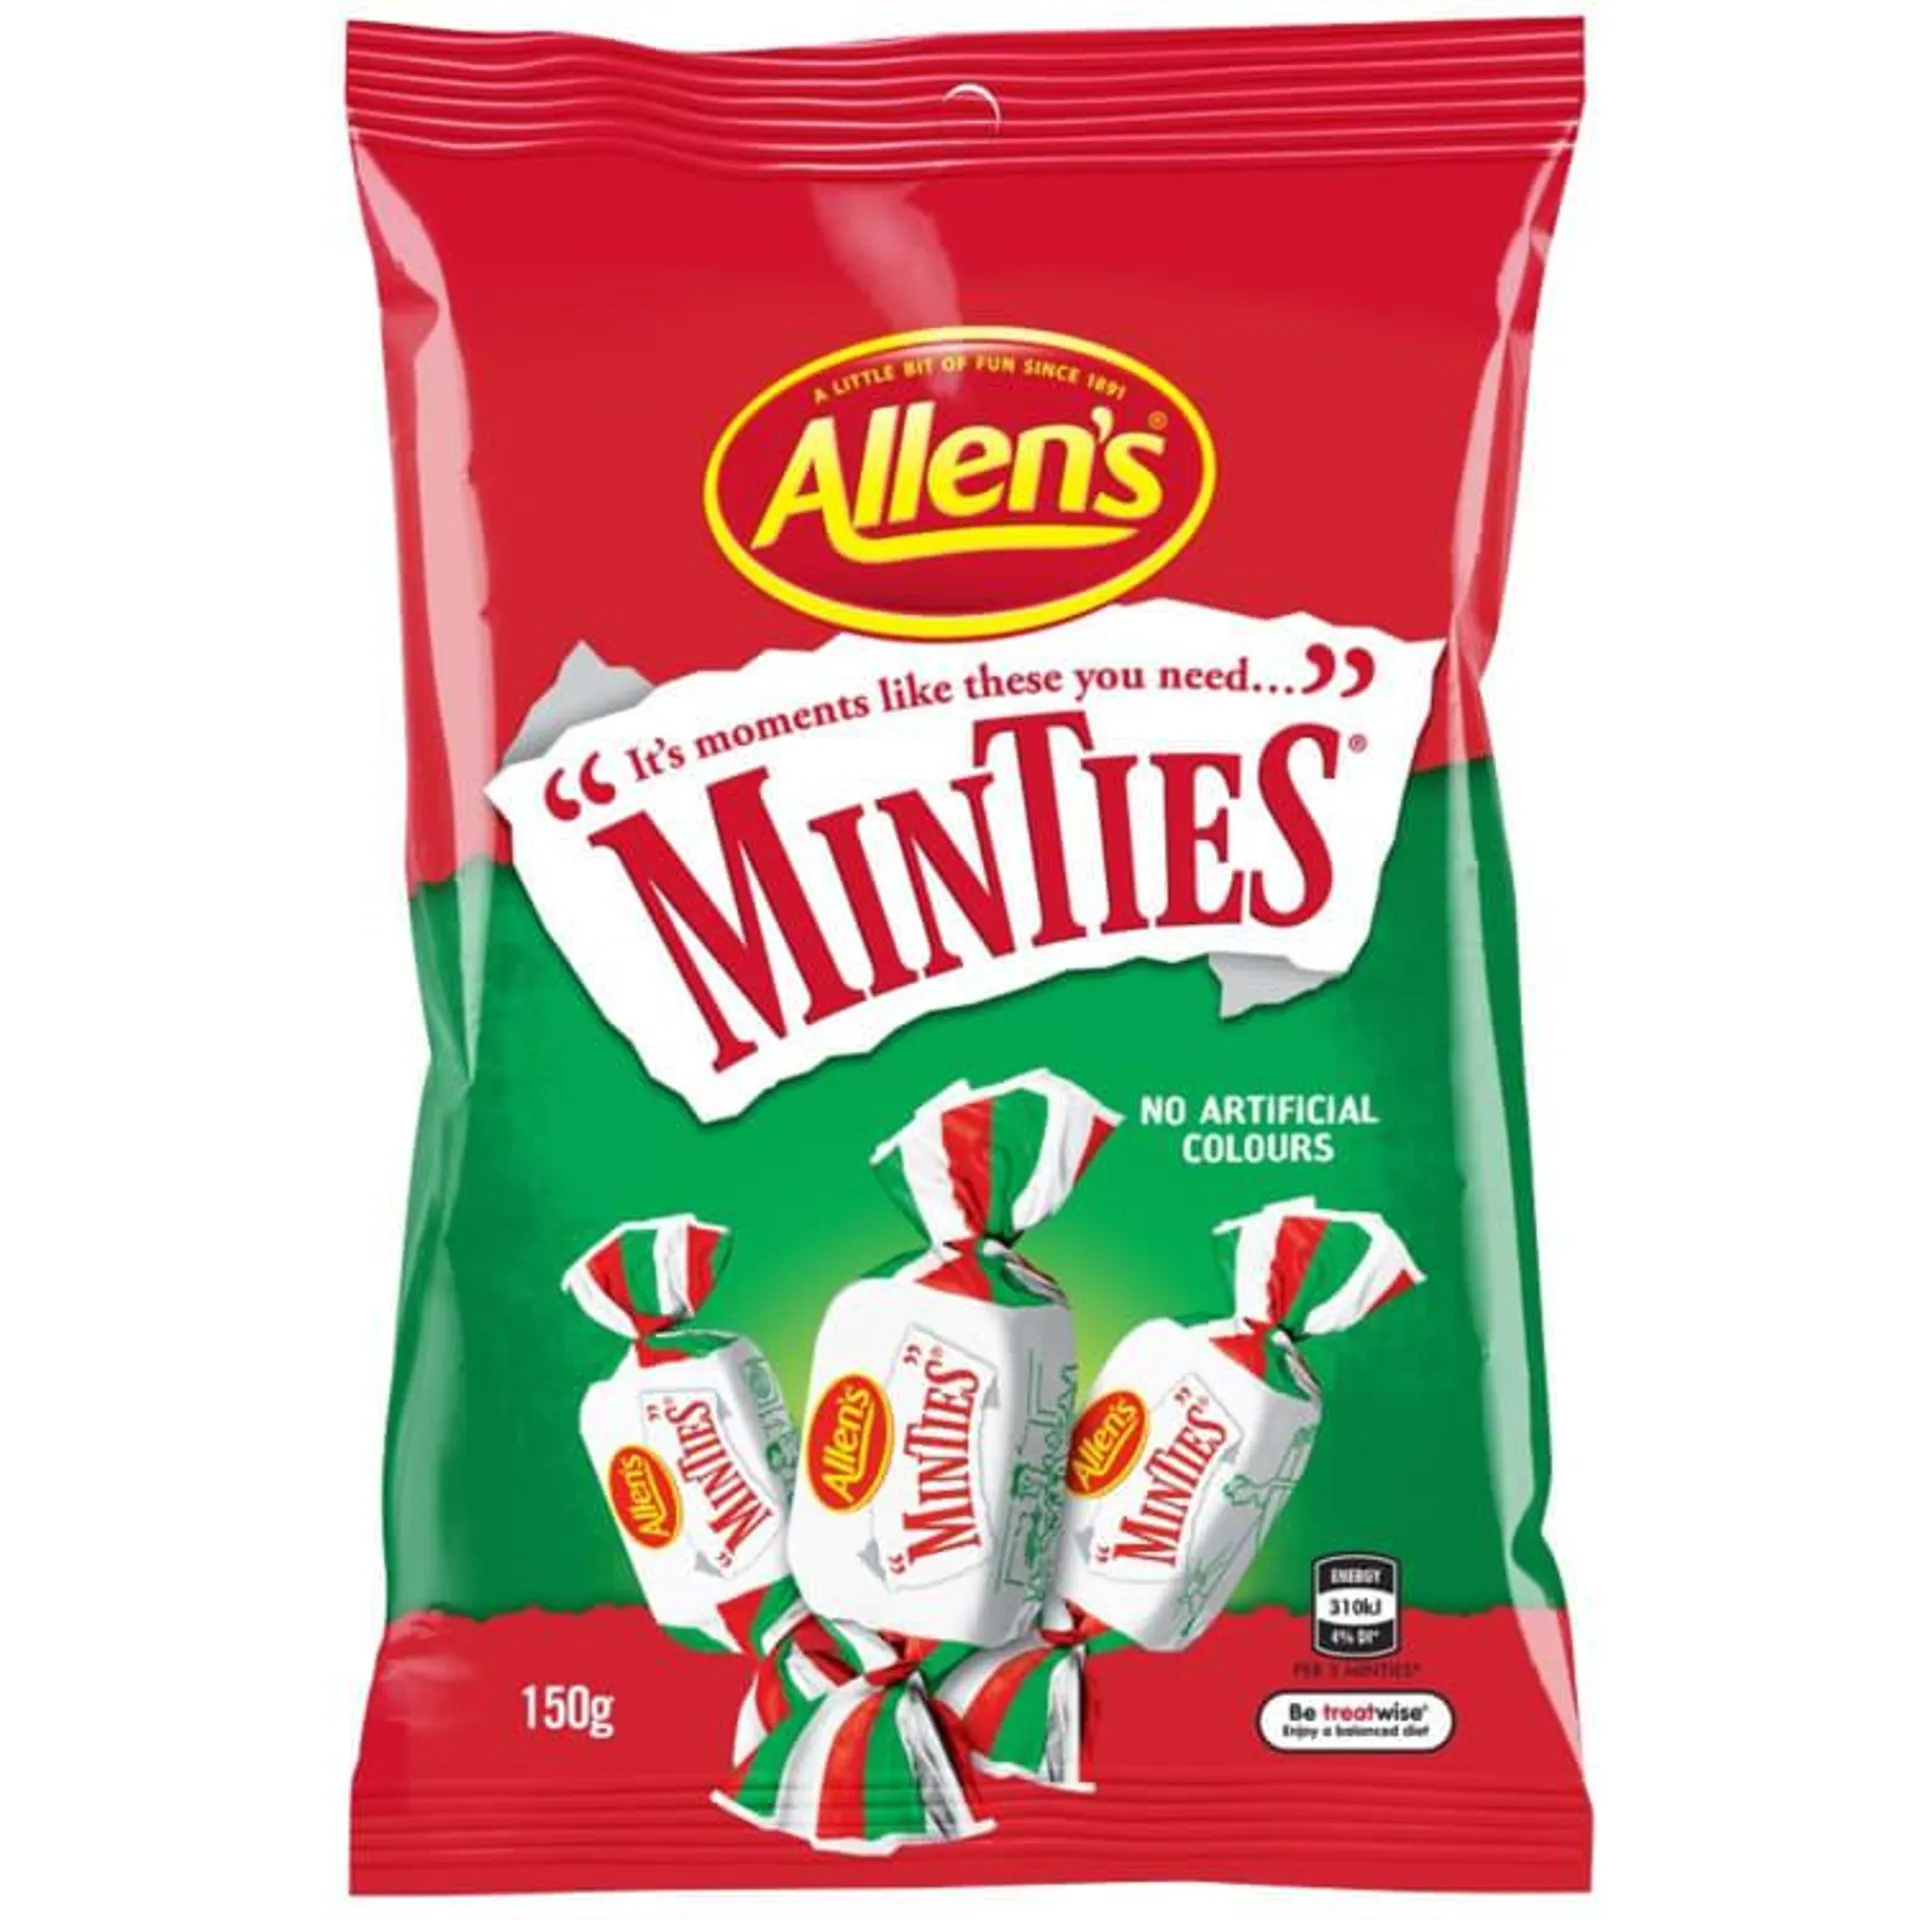 Allen's Minties Mint Chew Lollies Bag